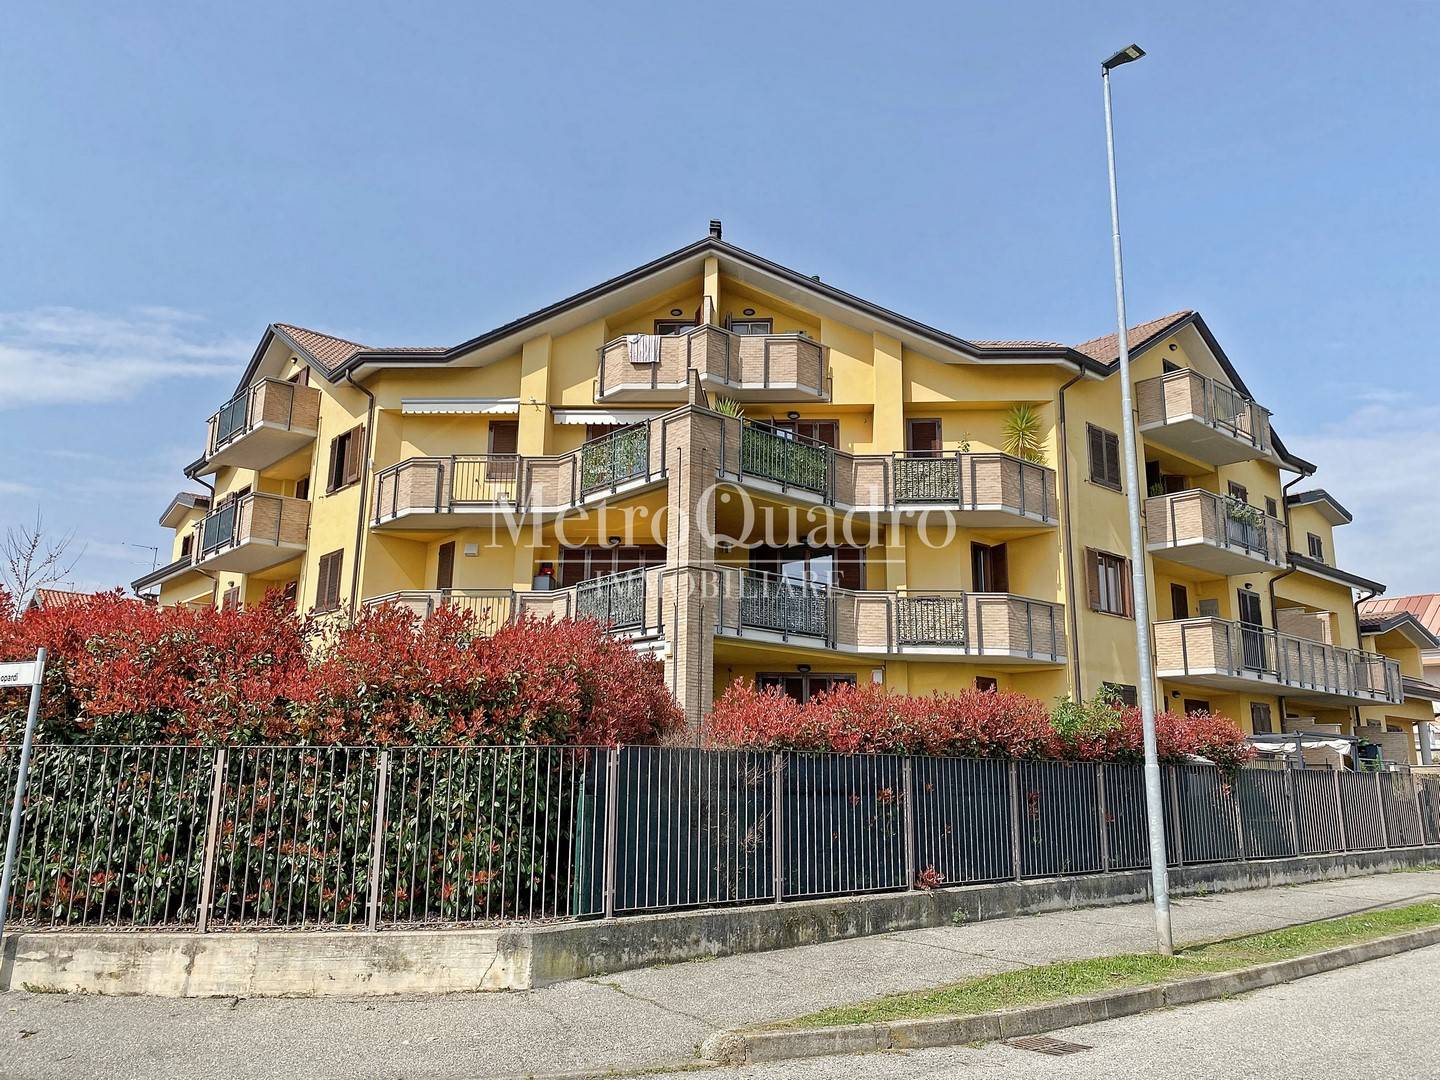 Appartamento in vendita a Sulbiate, 3 locali, prezzo € 237.000 | PortaleAgenzieImmobiliari.it